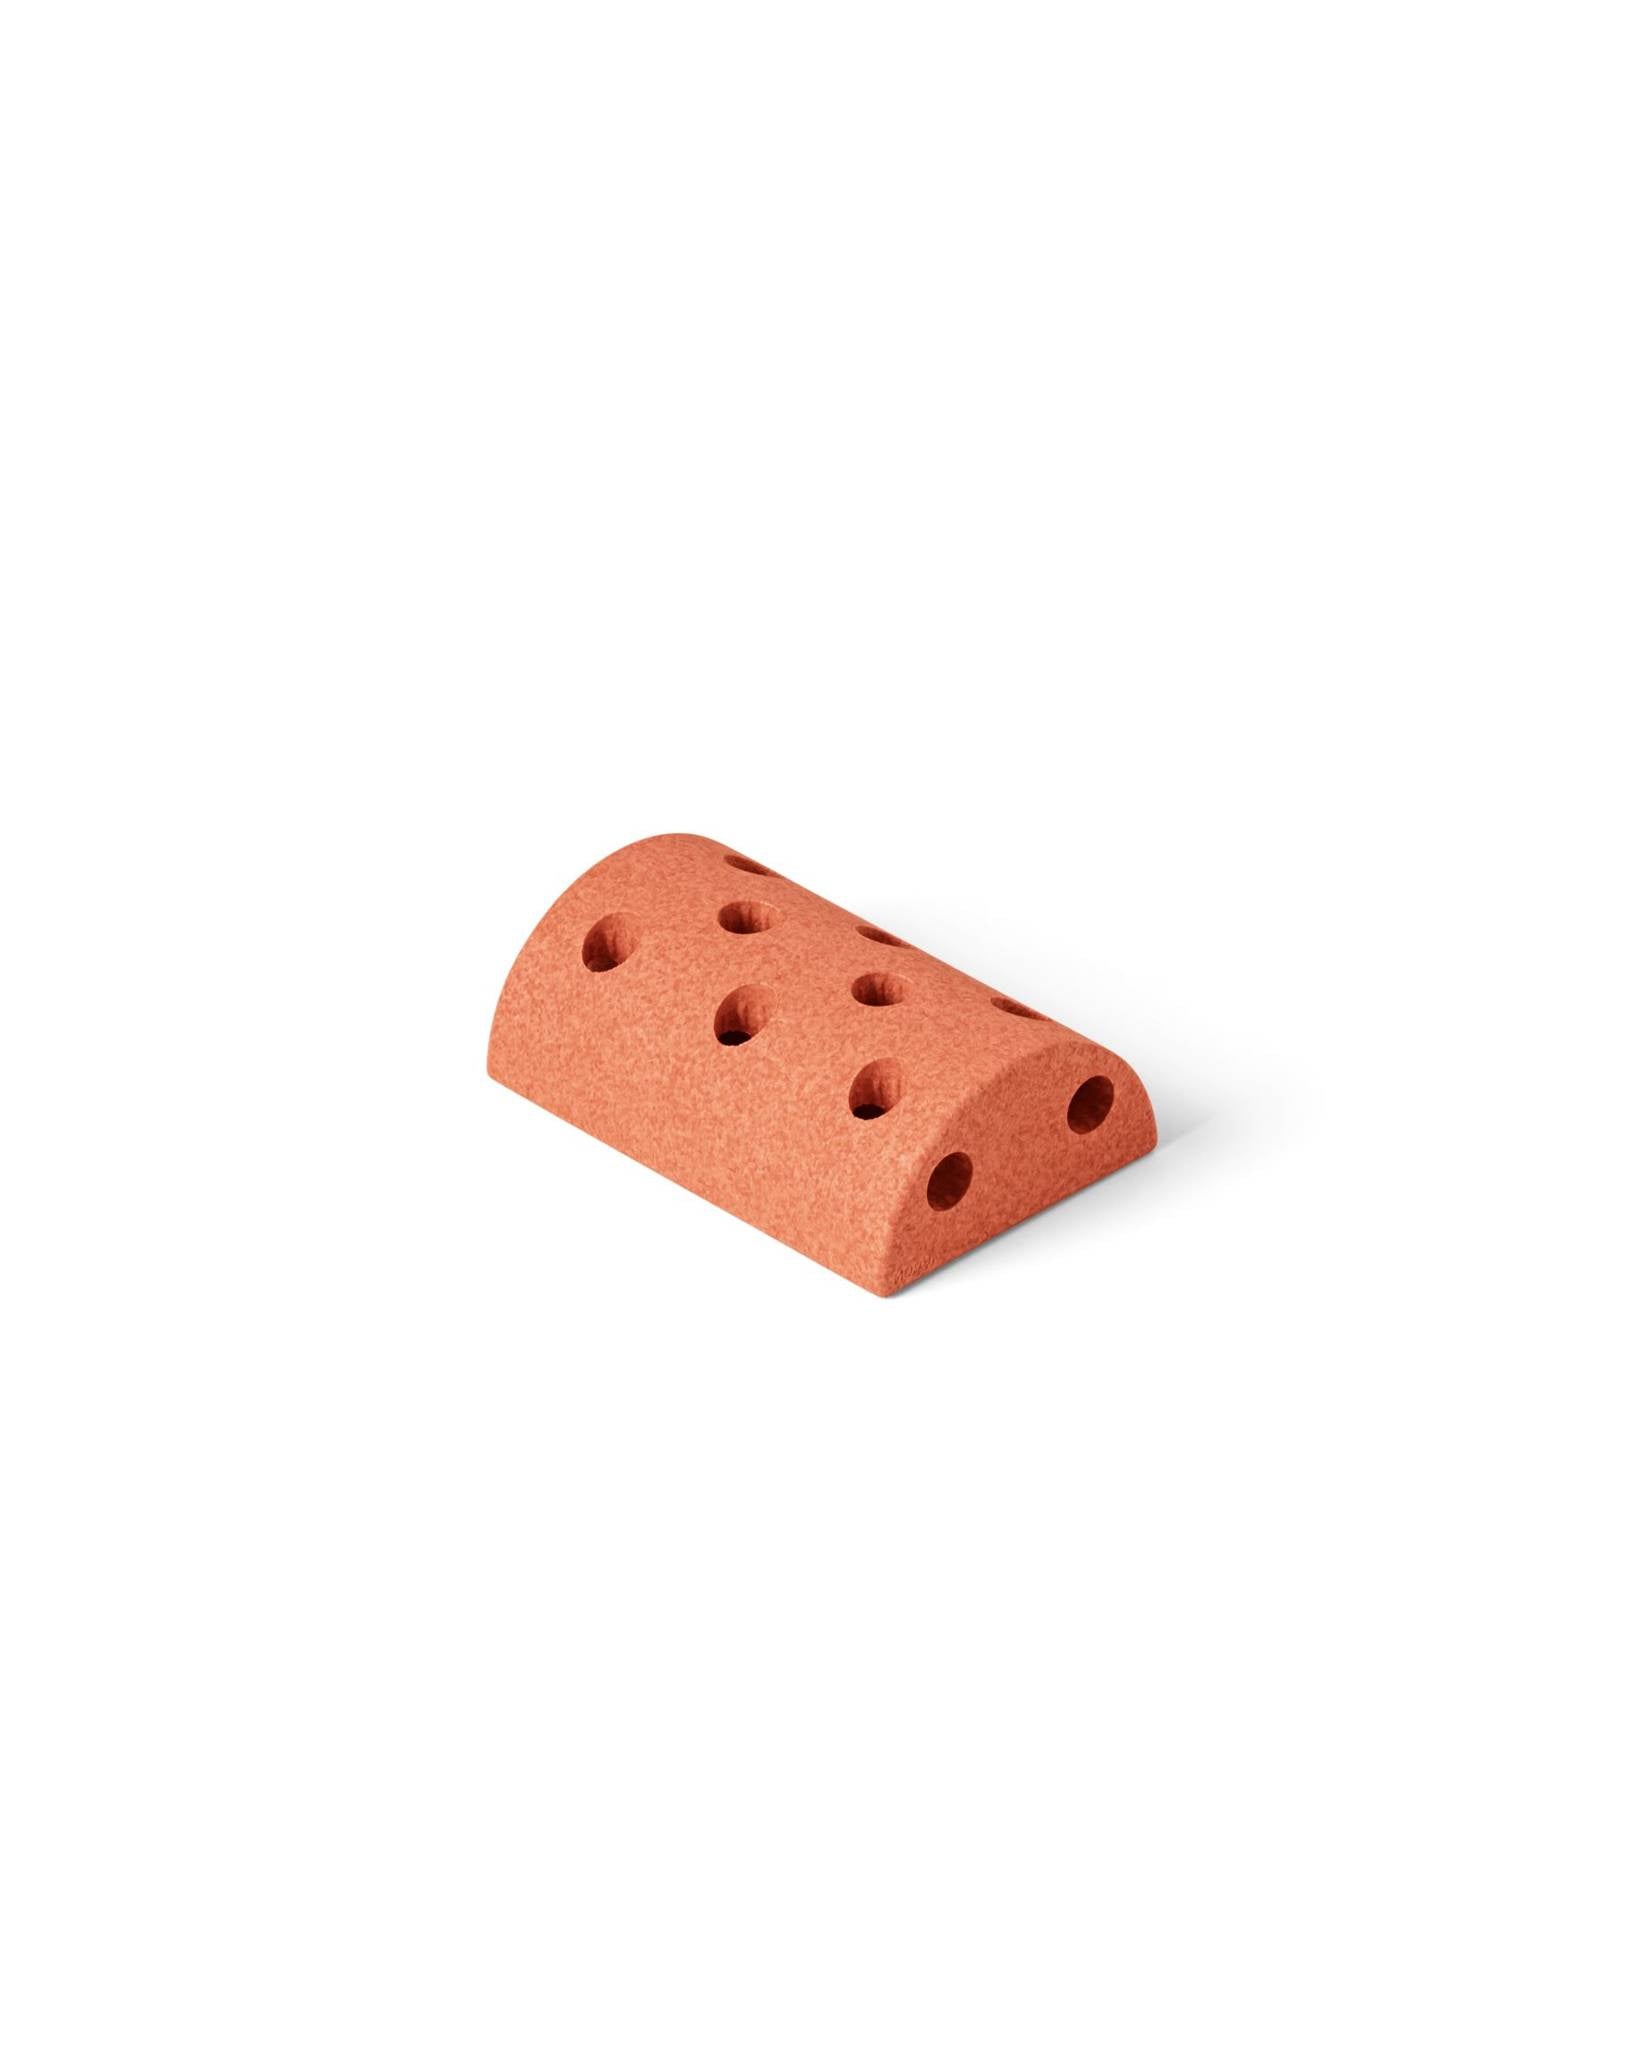 Modul - Block Round - Sensory Foam Block, Orange